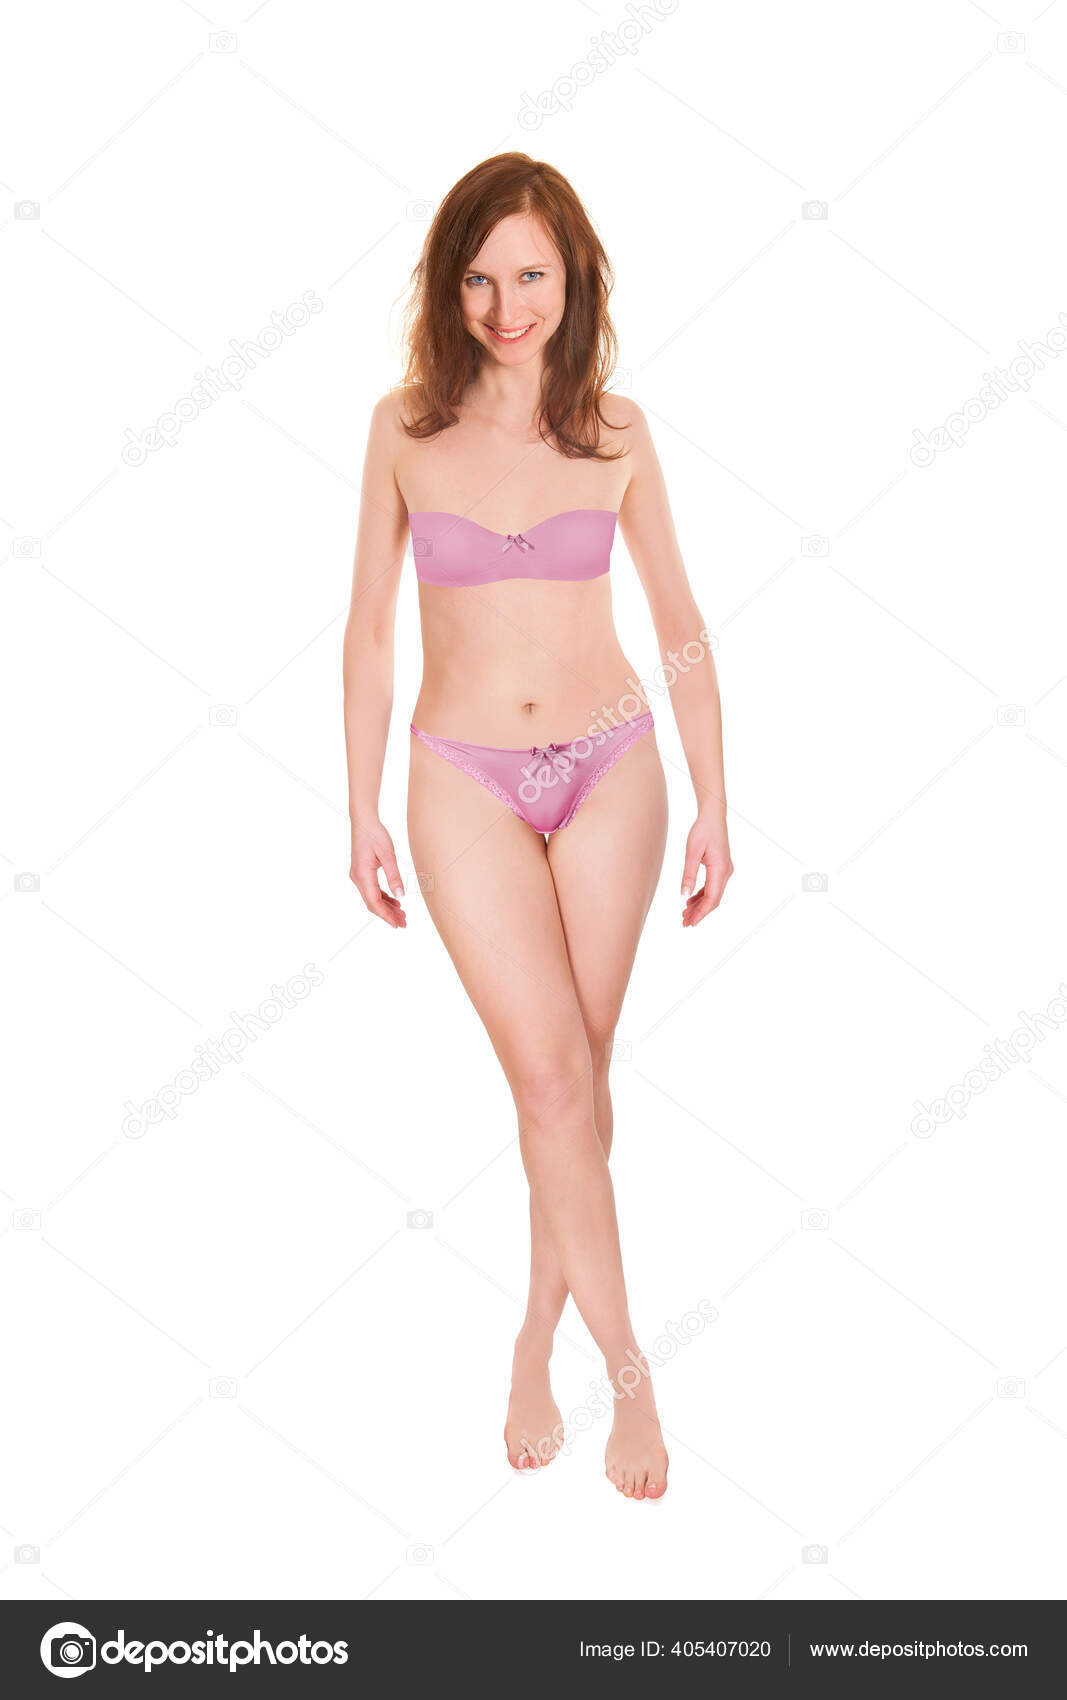 Slim woman wearing pink panties Stock Photo